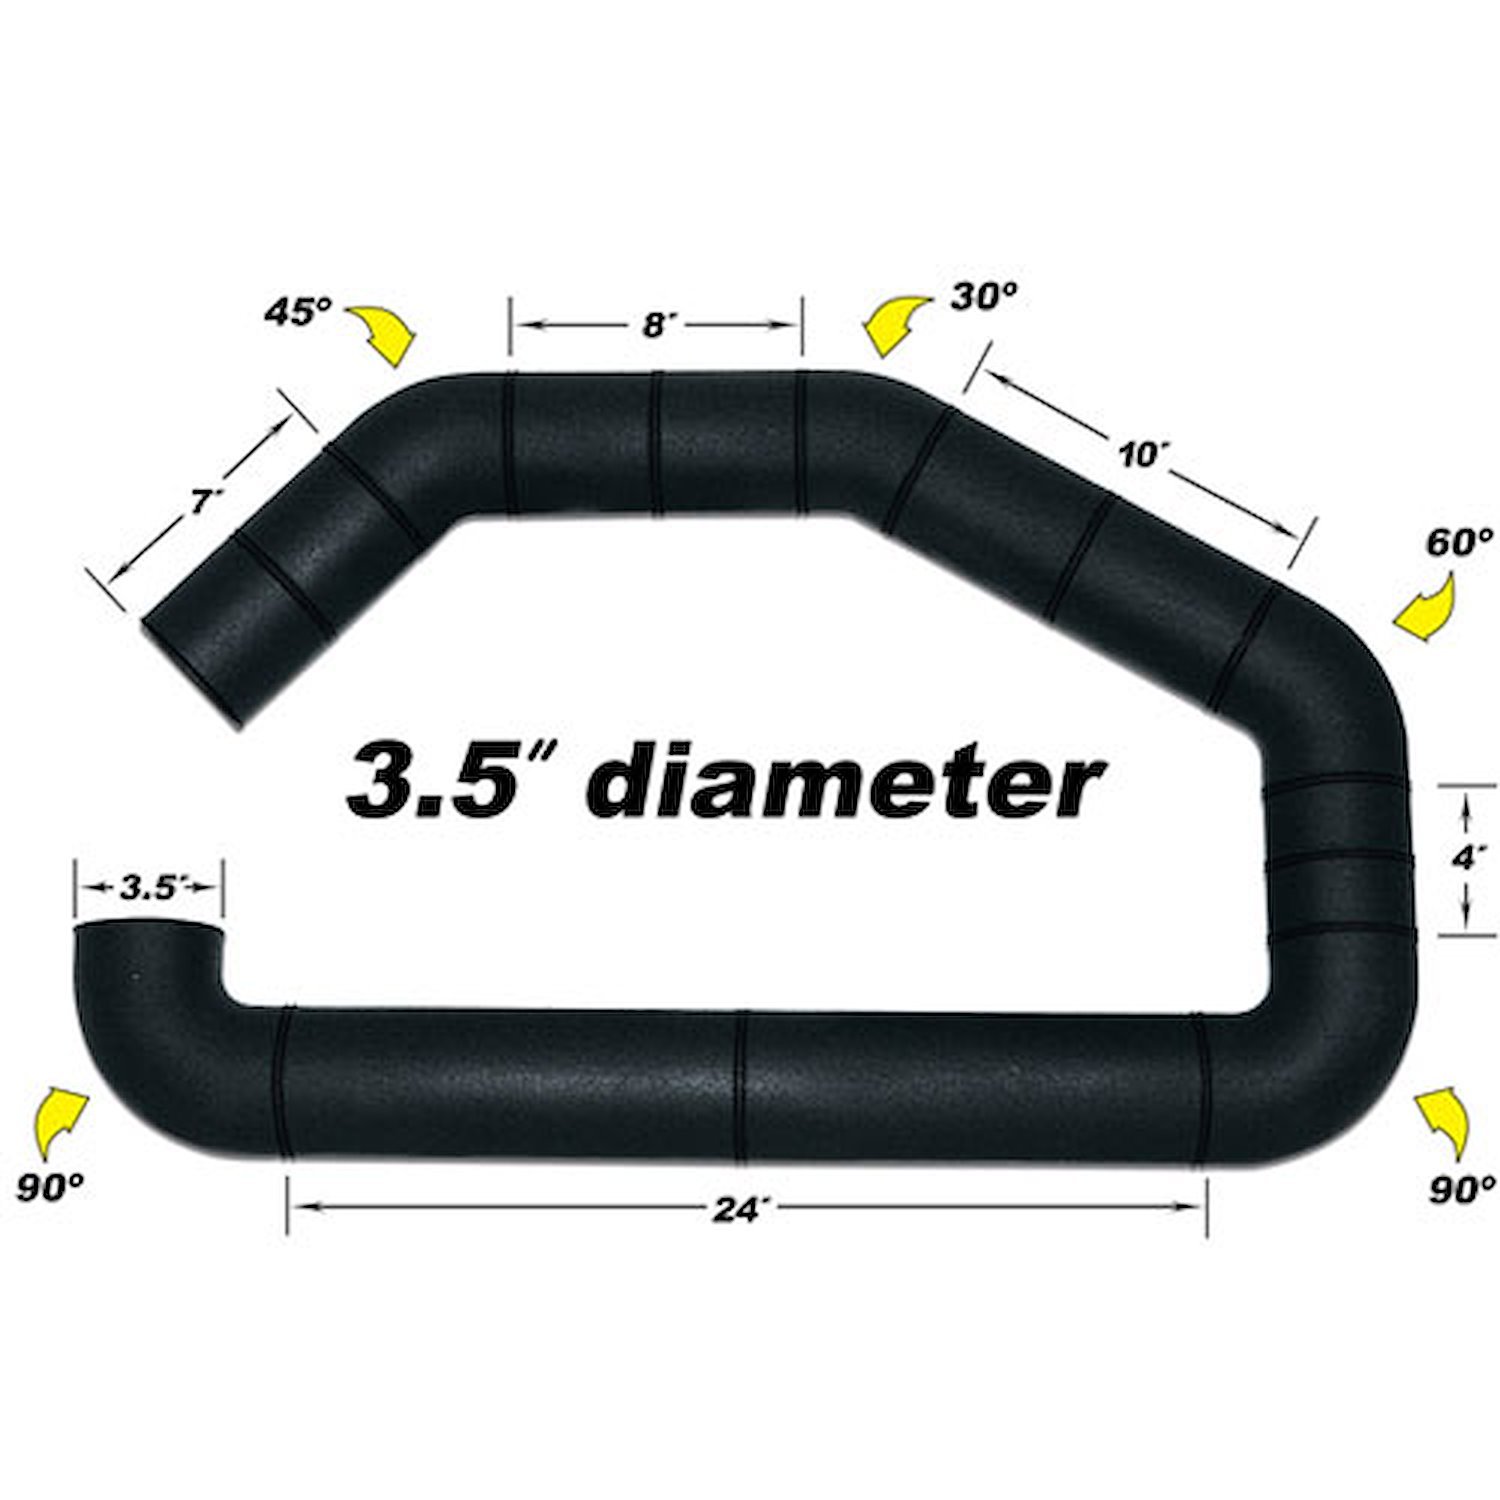 UBI Intake Tube Only 3.5" Diameter